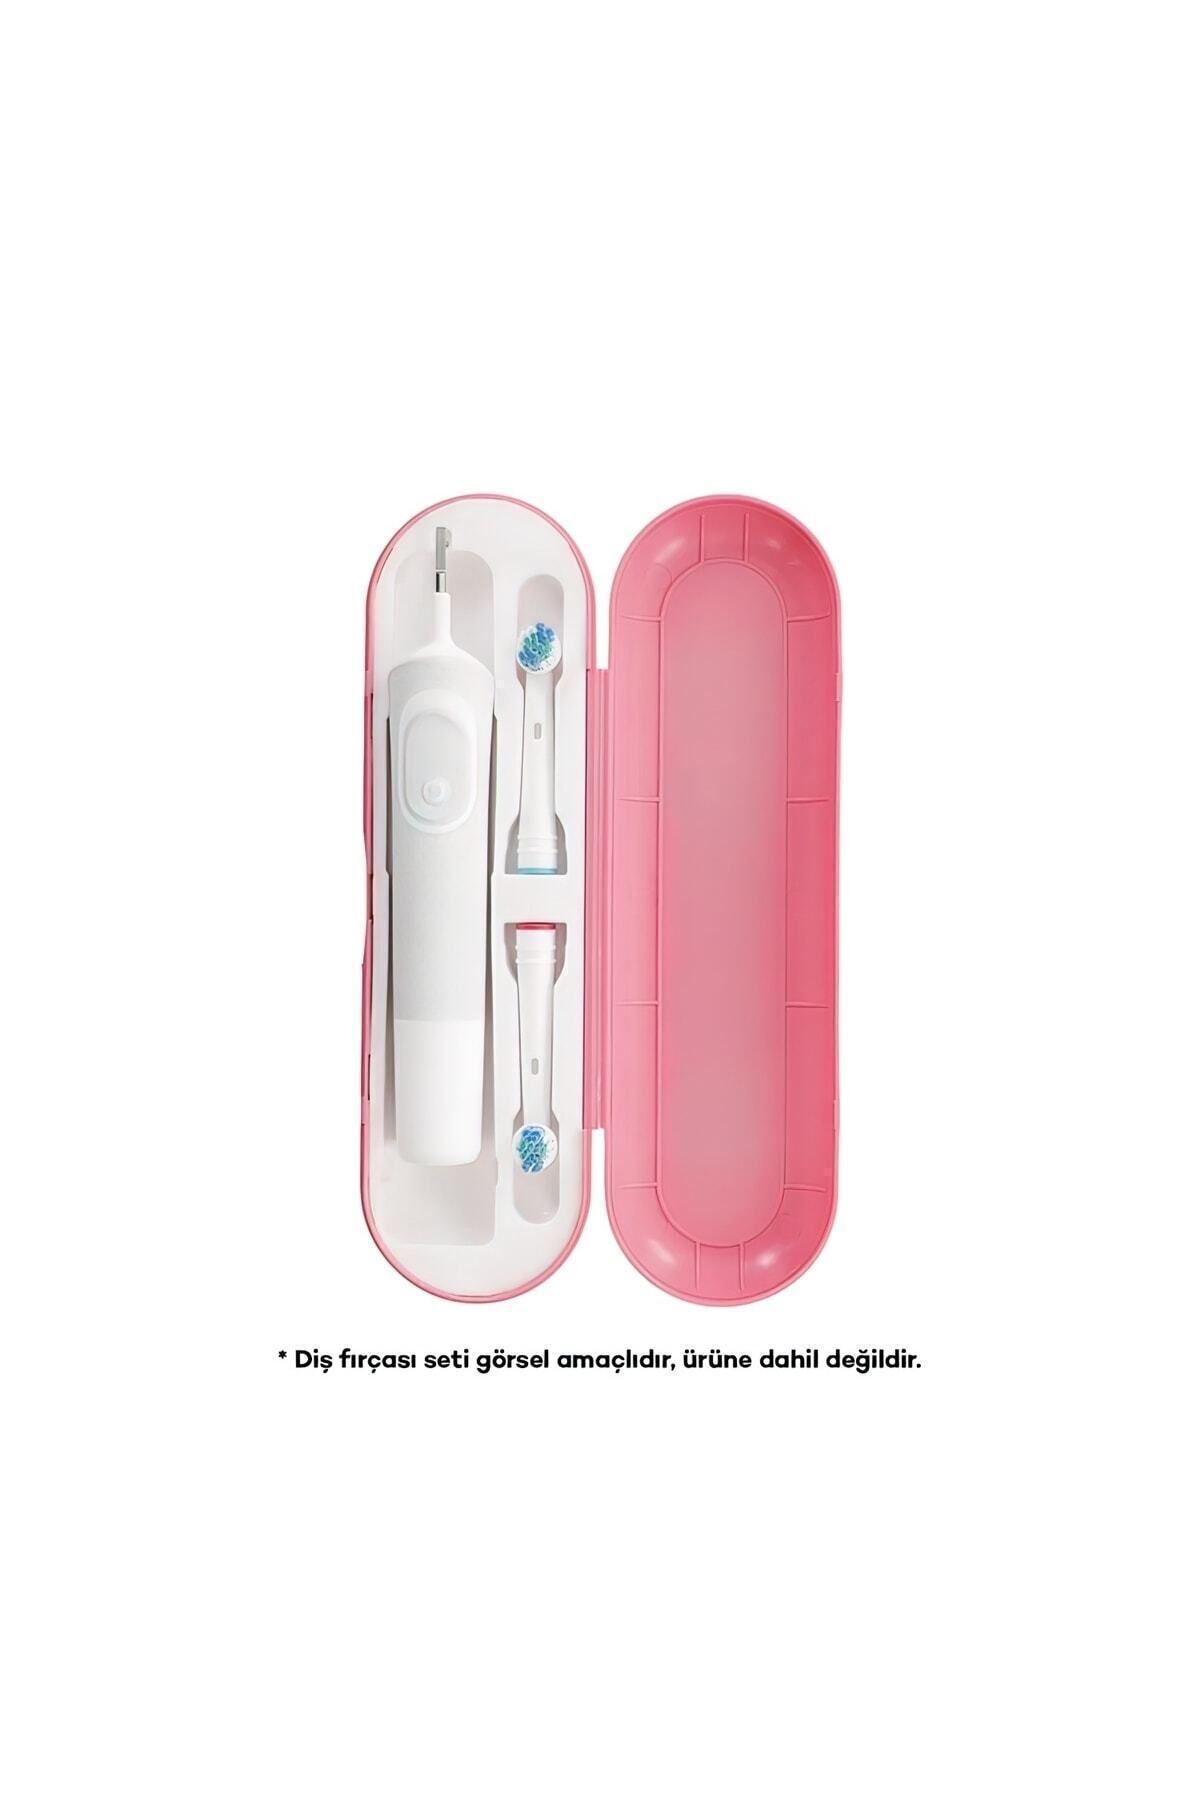 PI&GO Oral B Şarjlı Diş Fırçası Koruma Kabı Hijyenik Saklama Kabı Tüm Modeller Için Uyumlu - Pudra Pembe